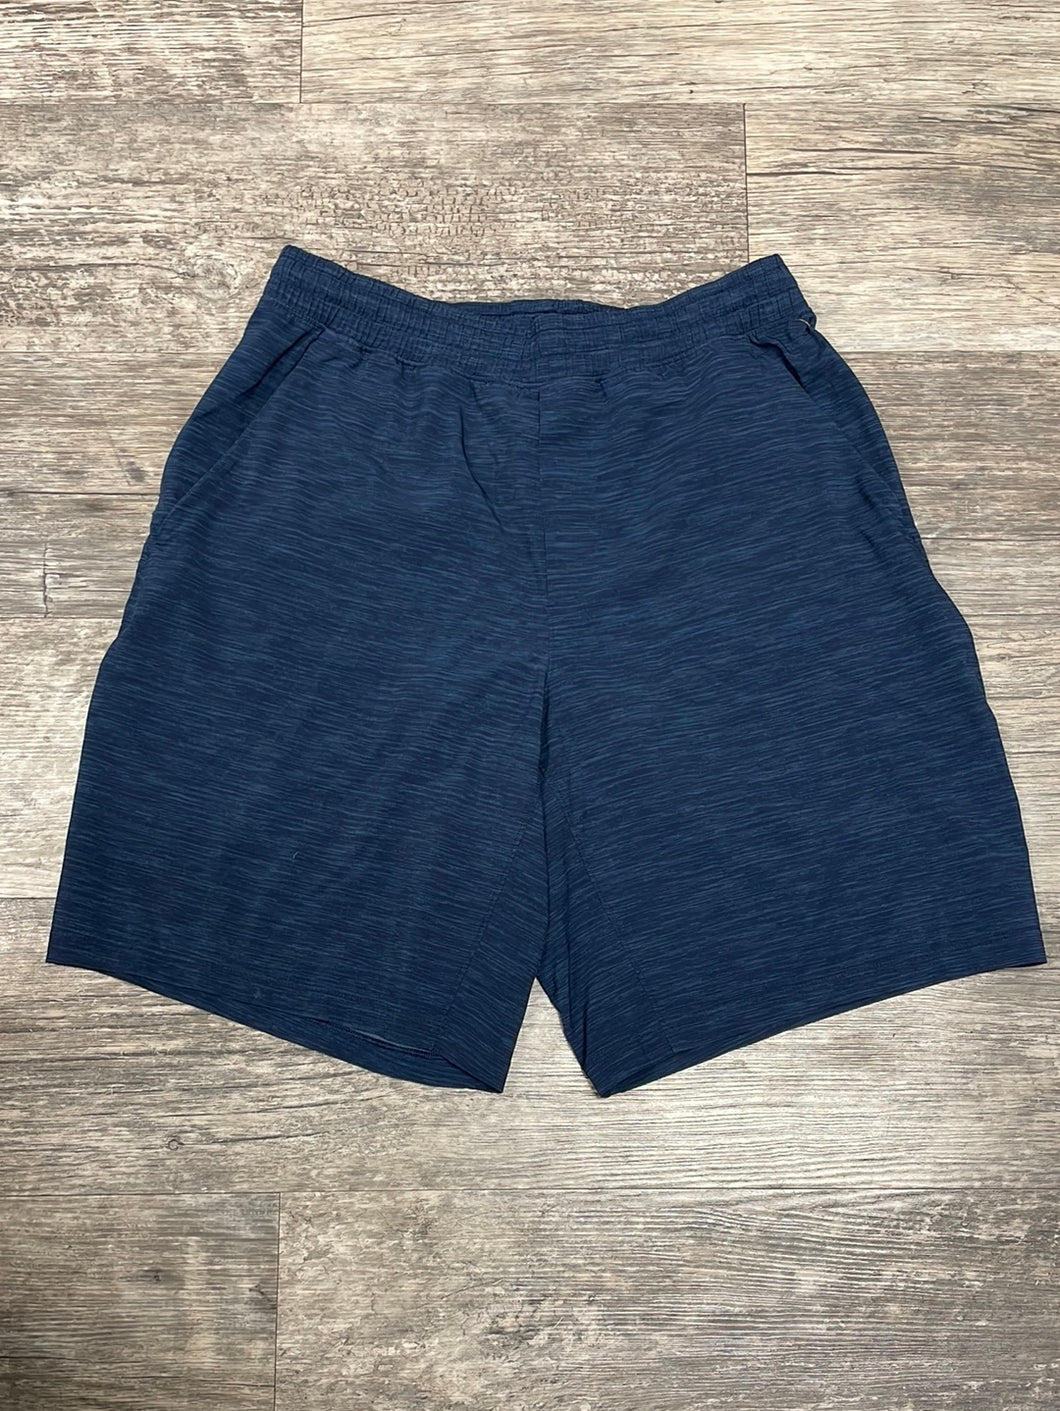 Lululemon Men's Athletic Shorts Size Medium